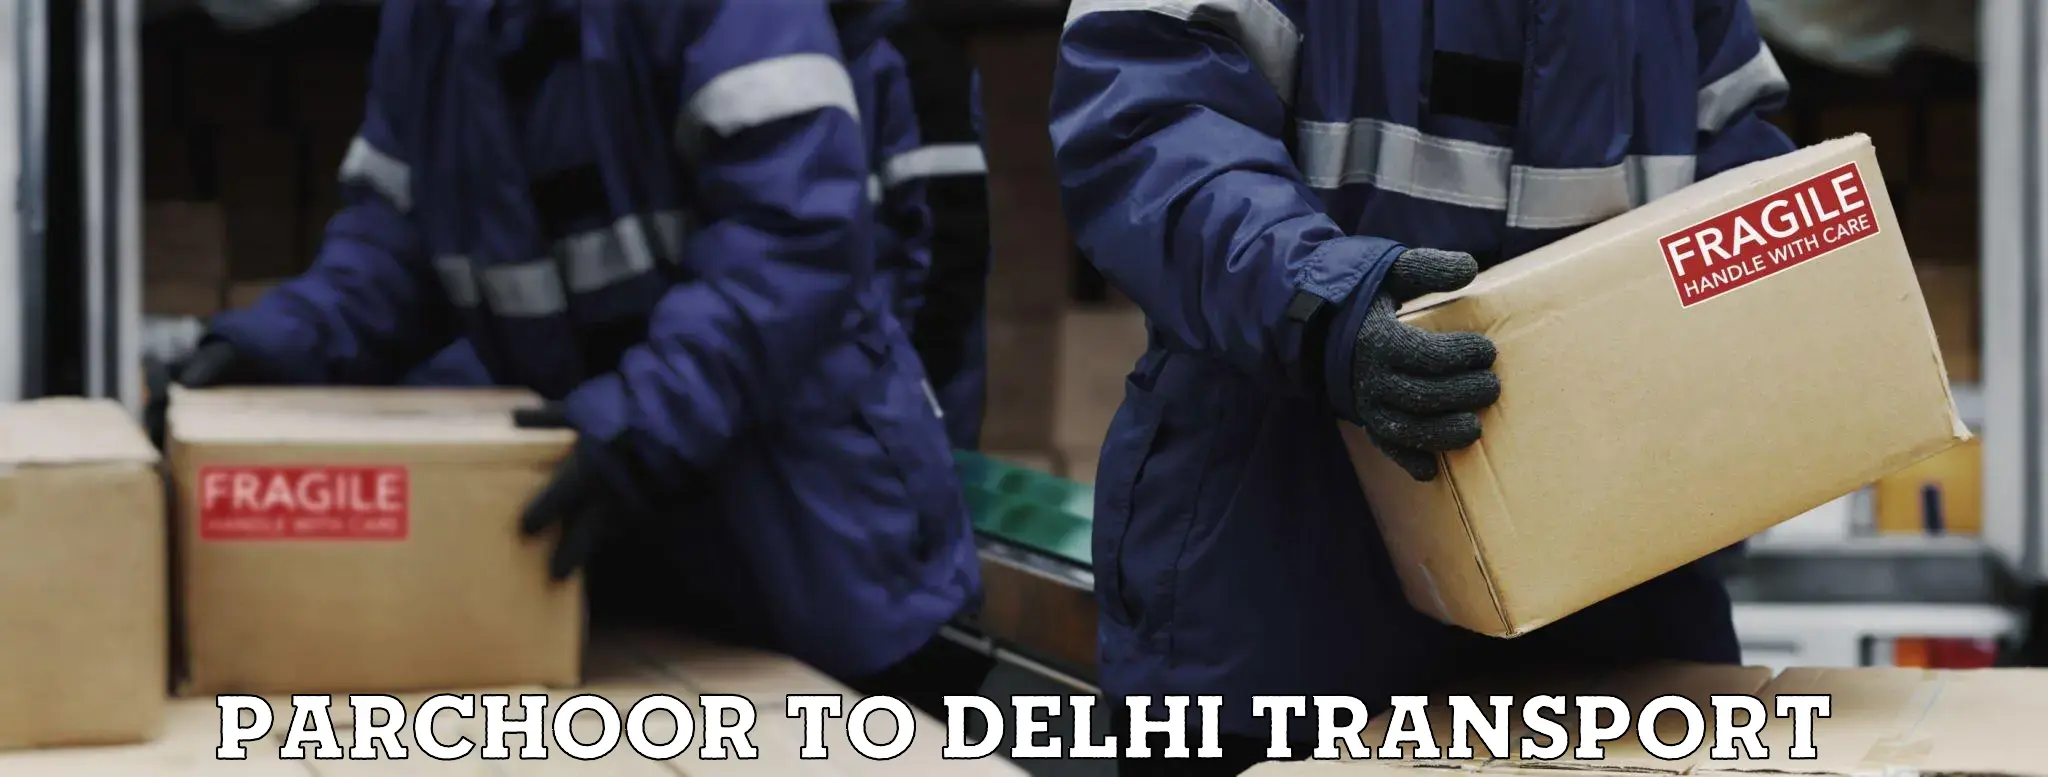 Nearest transport service Parchoor to IIT Delhi